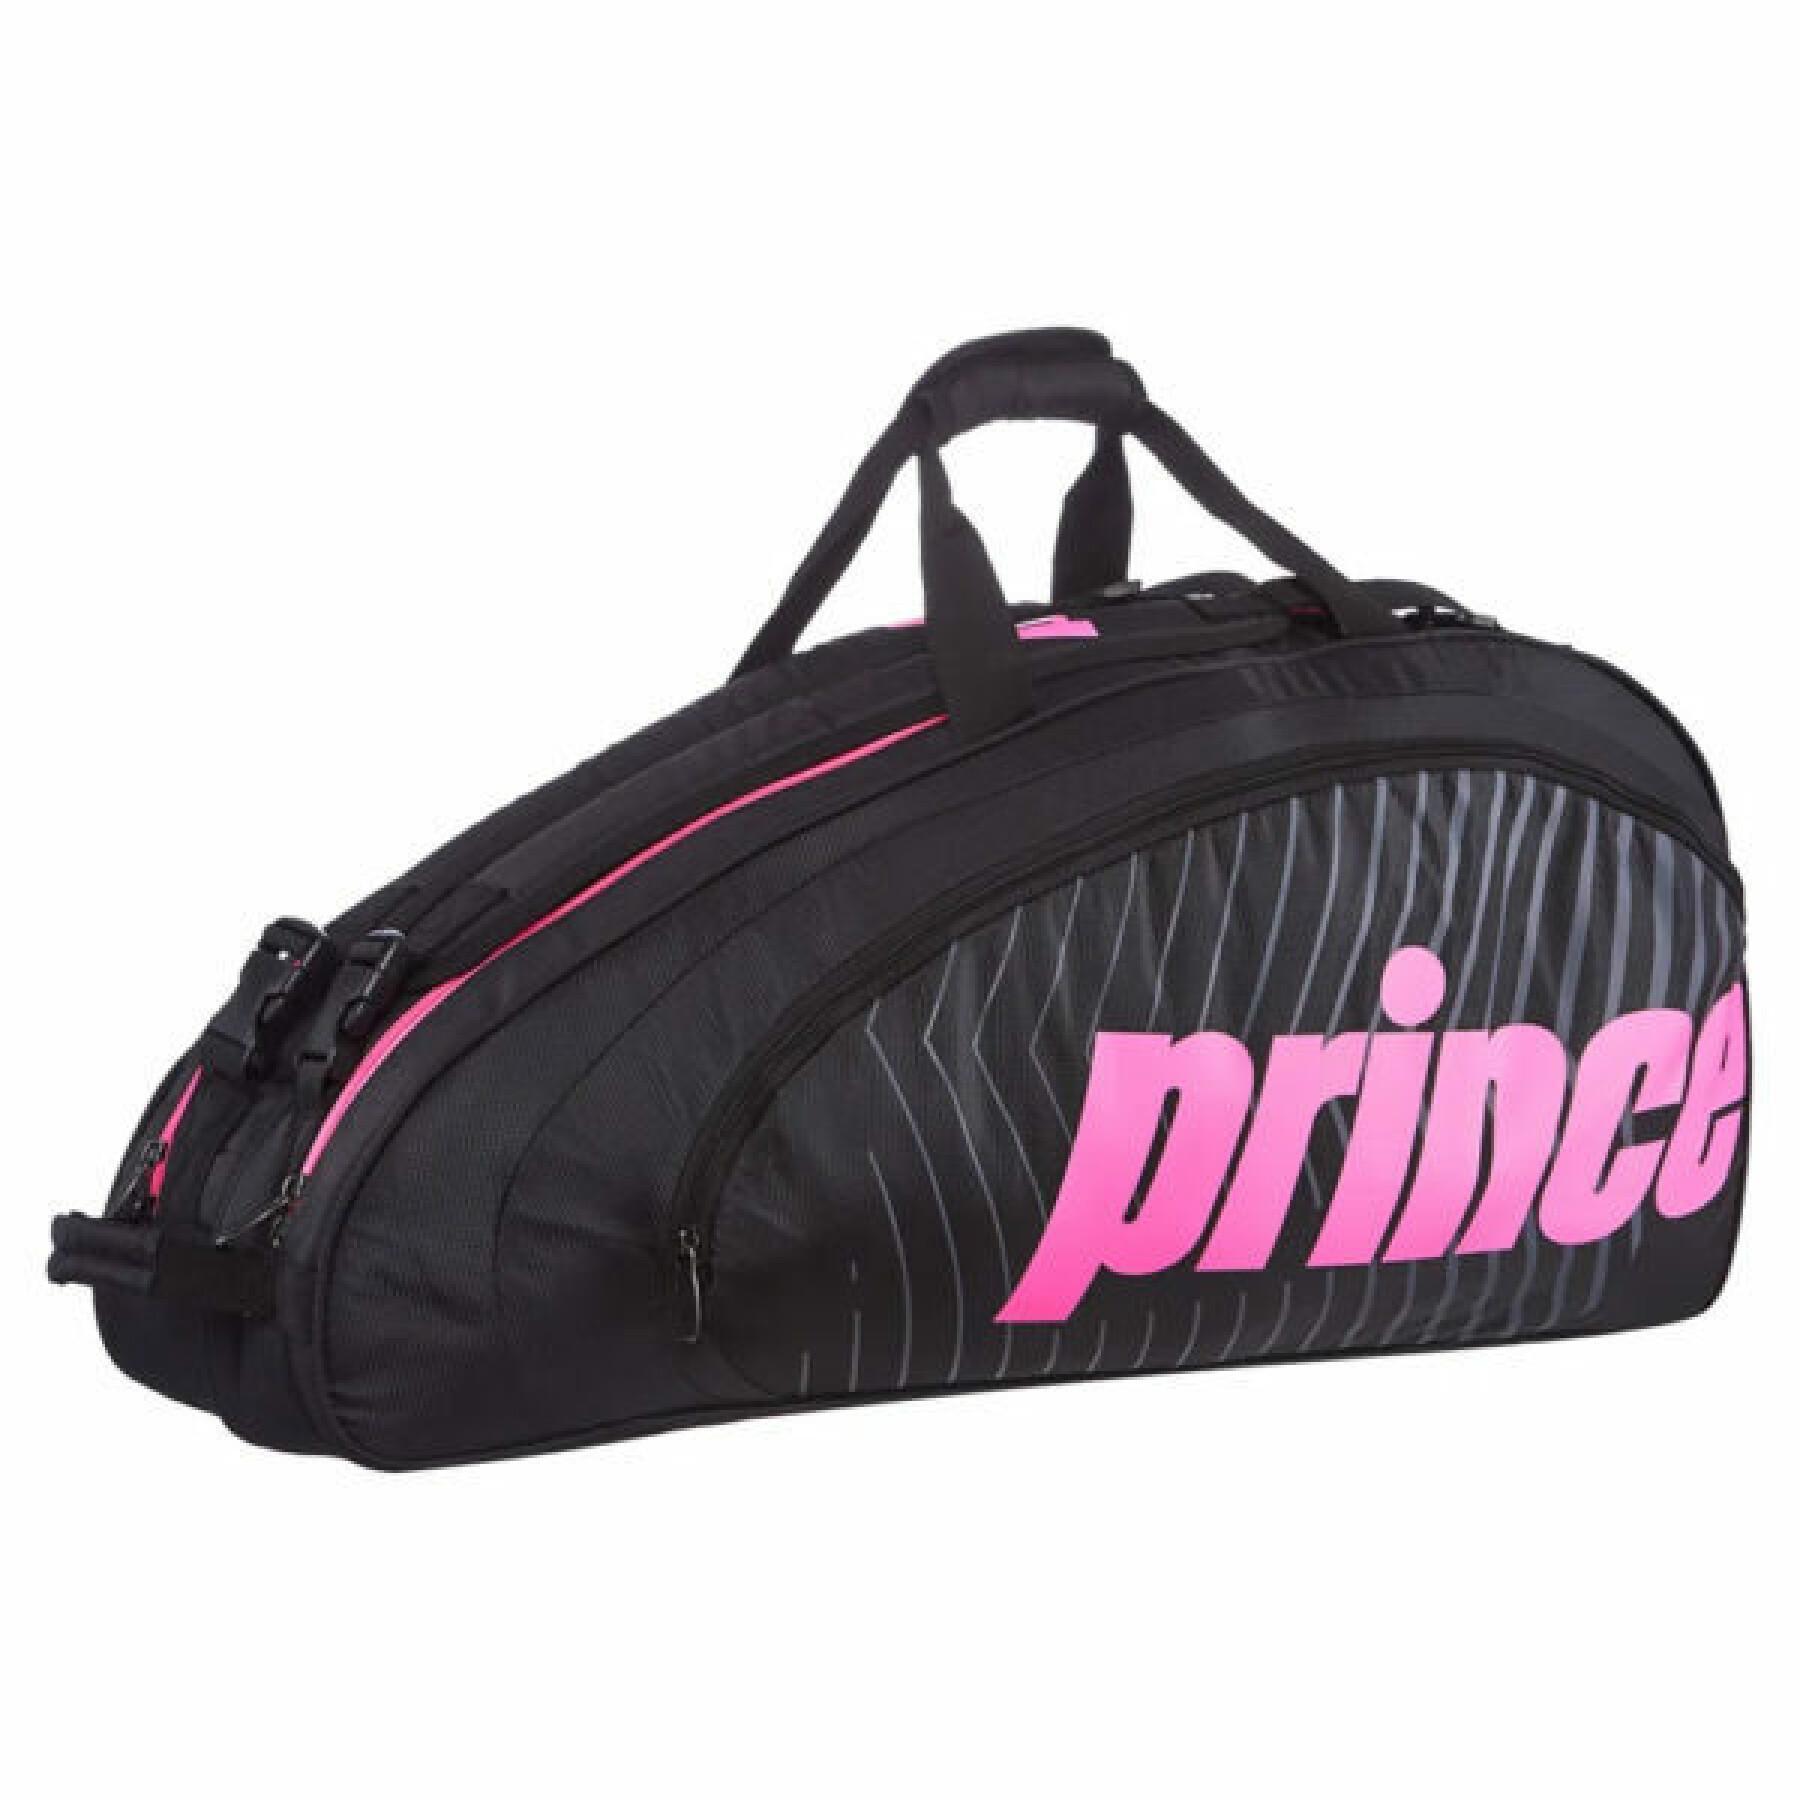 Tennis racket bag Prince Thermo 3